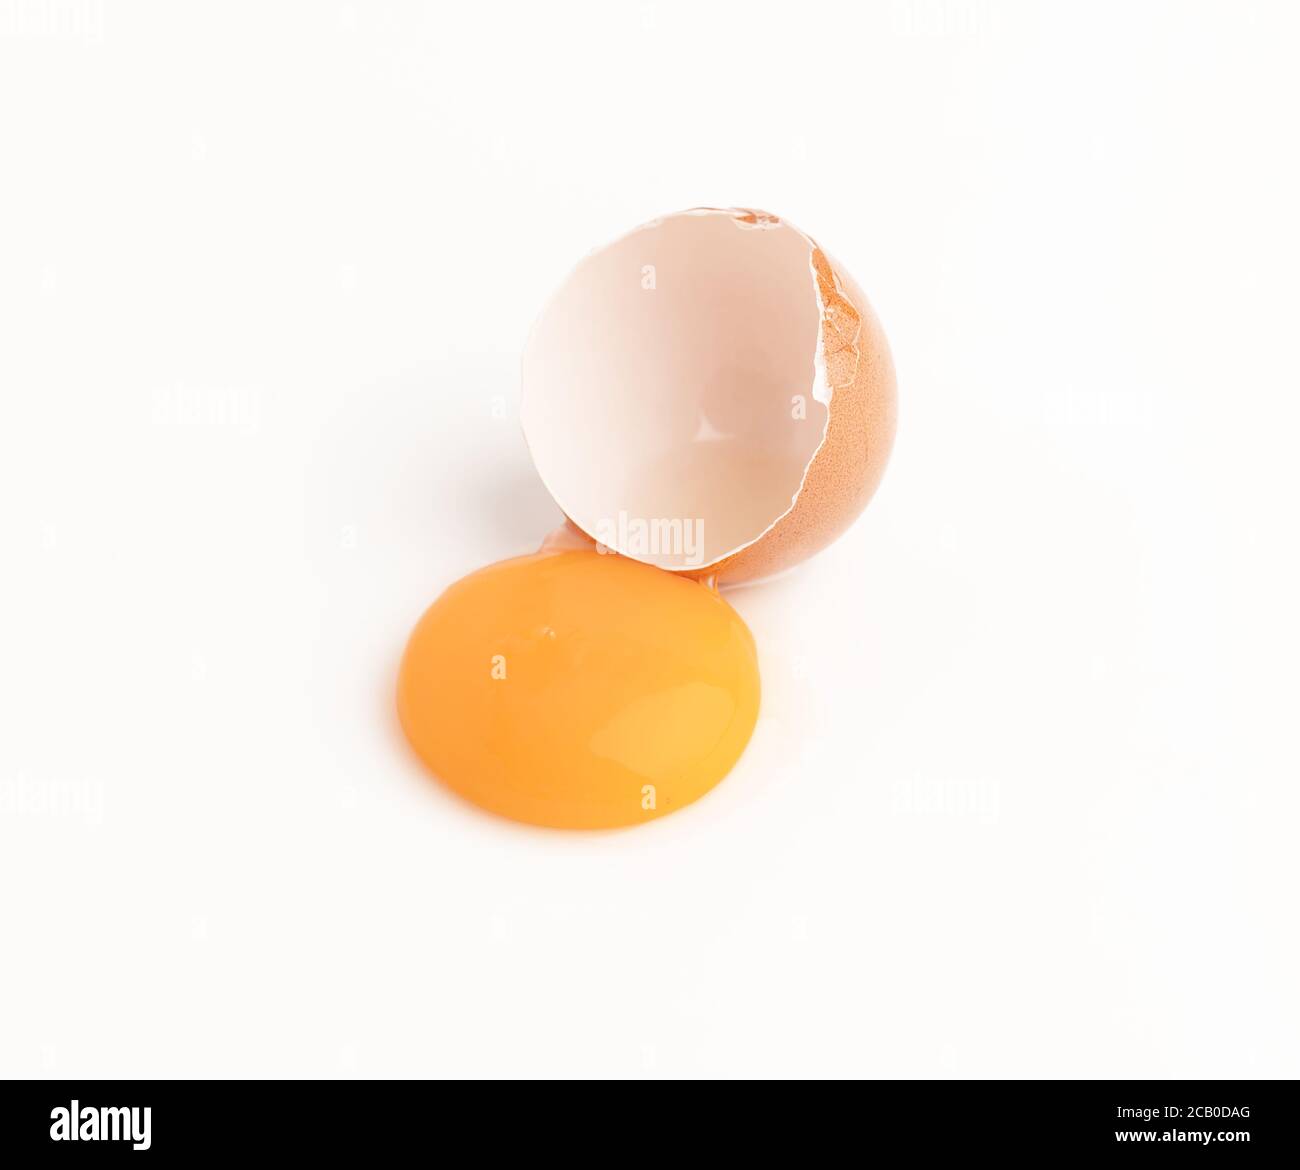 Huevo de pollo crudo y yemas aislados sobre fondo blanco Foto de stock